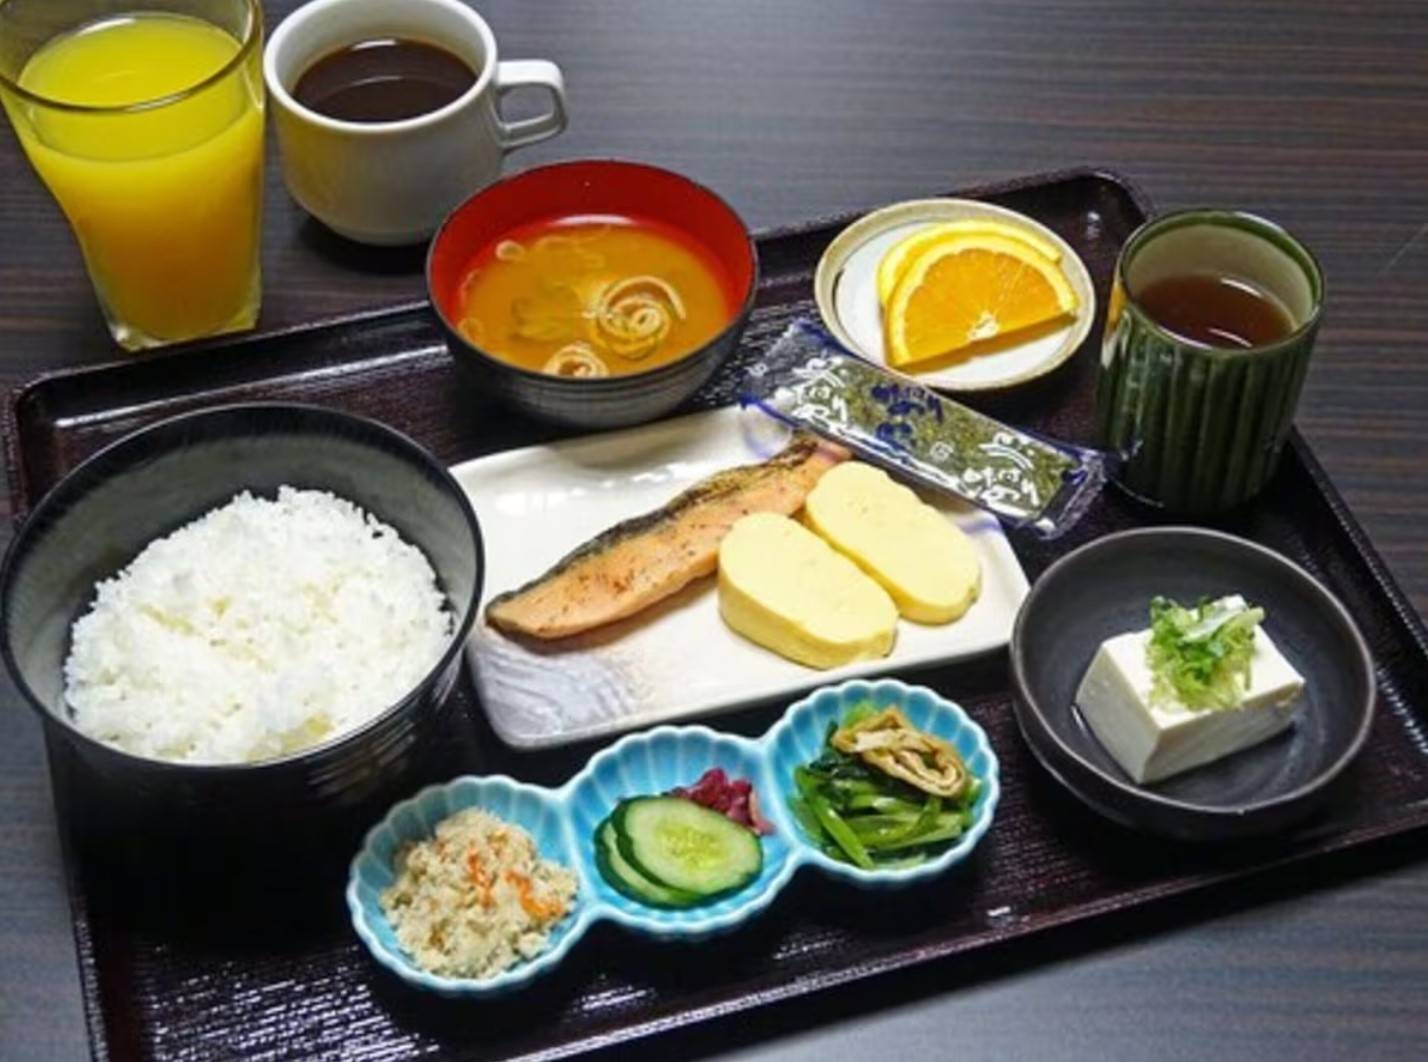 京都酒店 早餐提供西式及和式選擇，以套餐形式供應